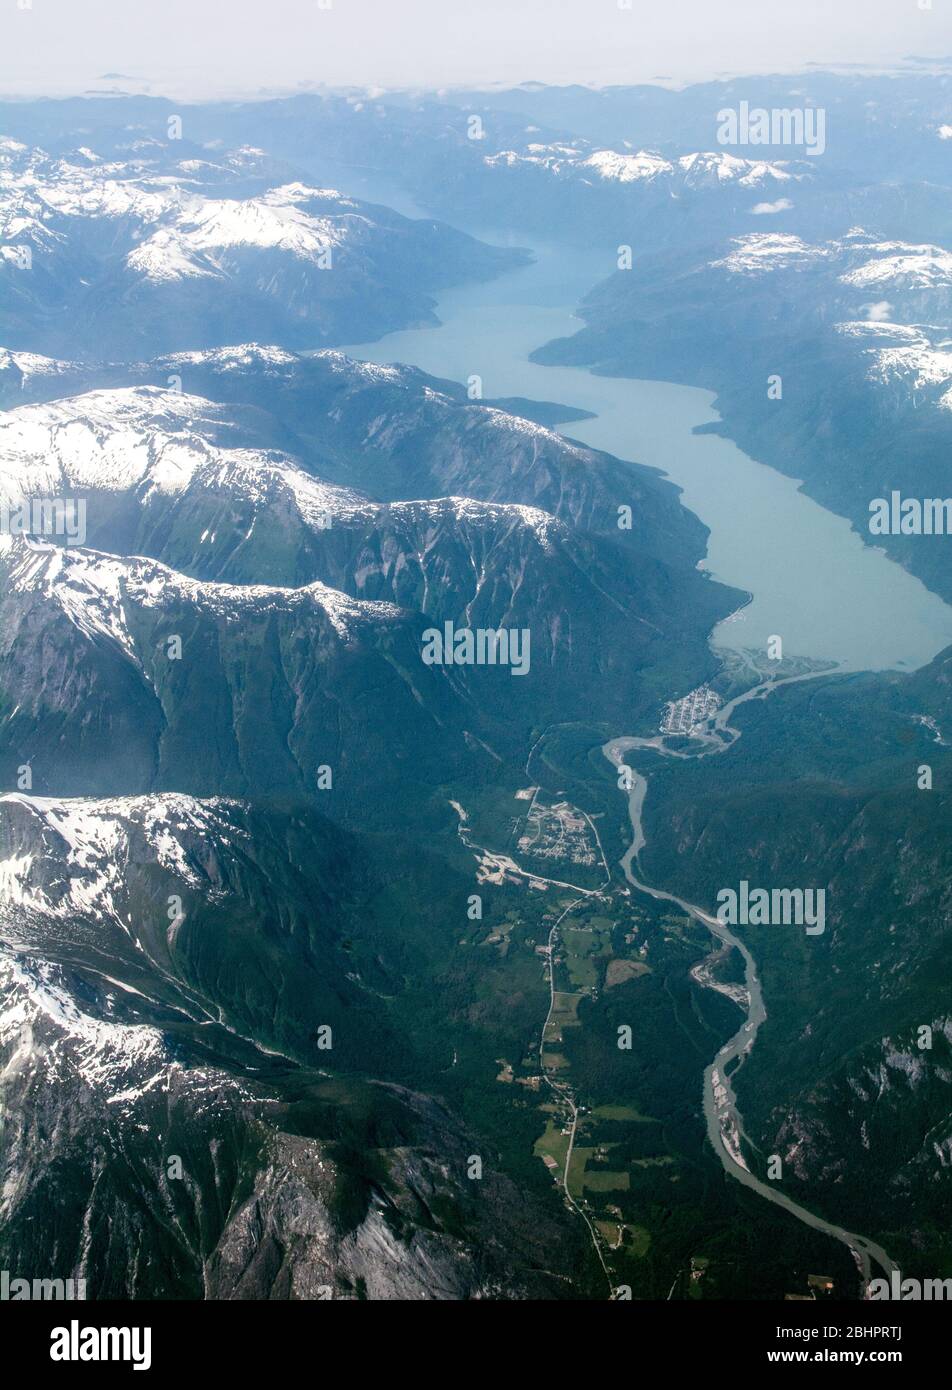 Vue aérienne de la rivière Bella Coola inférieure et de la vallée et de l'océan Pacifique, dans la forêt pluviale de Great Bear, côte de la Colombie-Britannique, Canada. Banque D'Images